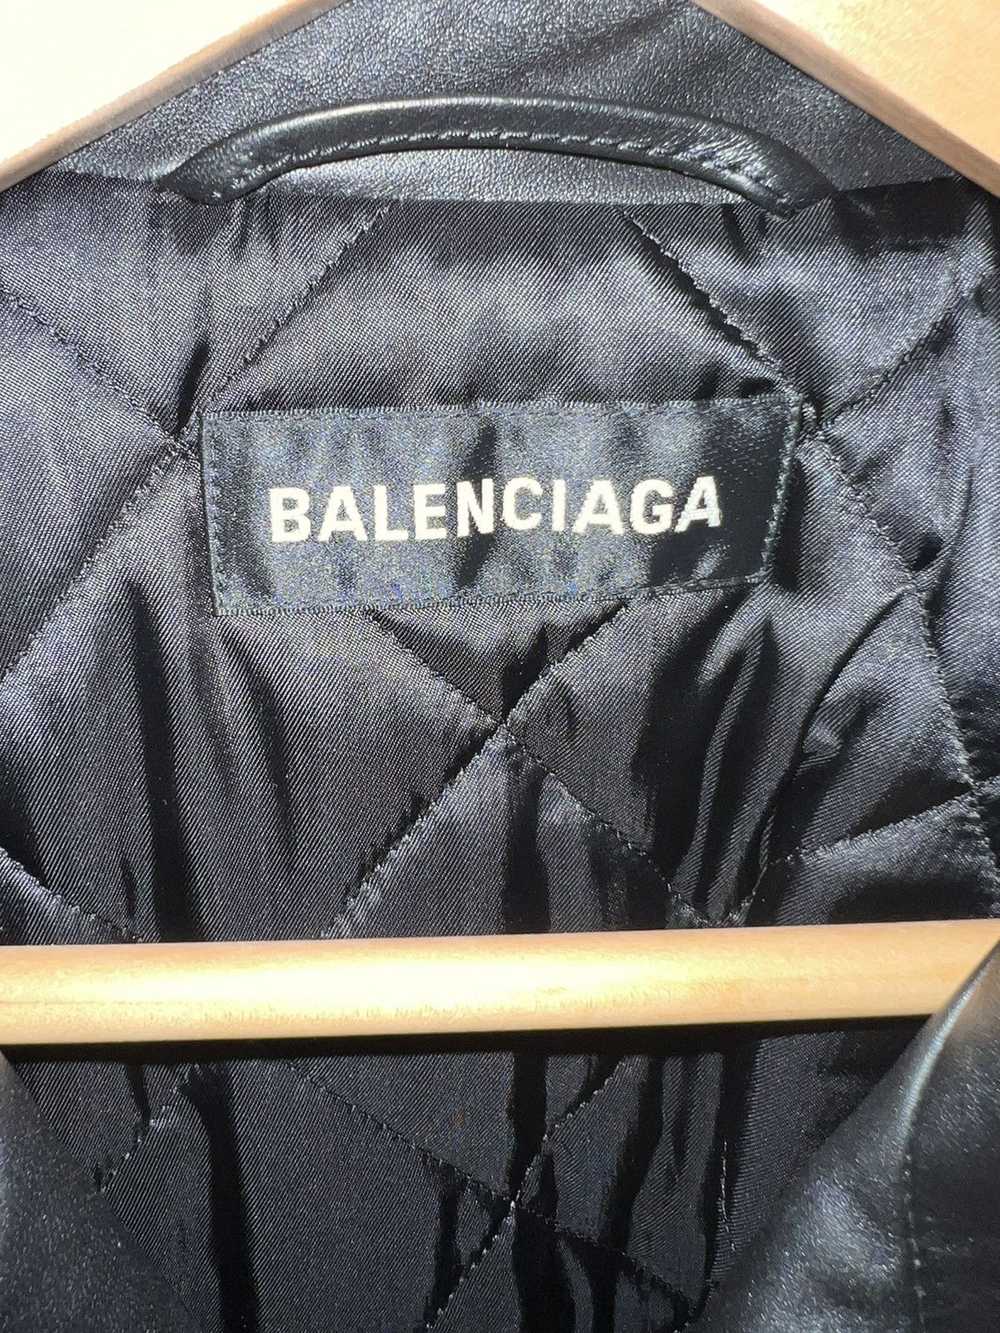 Balenciaga Balenciaga 2017 Logo Leather Jacket - image 2